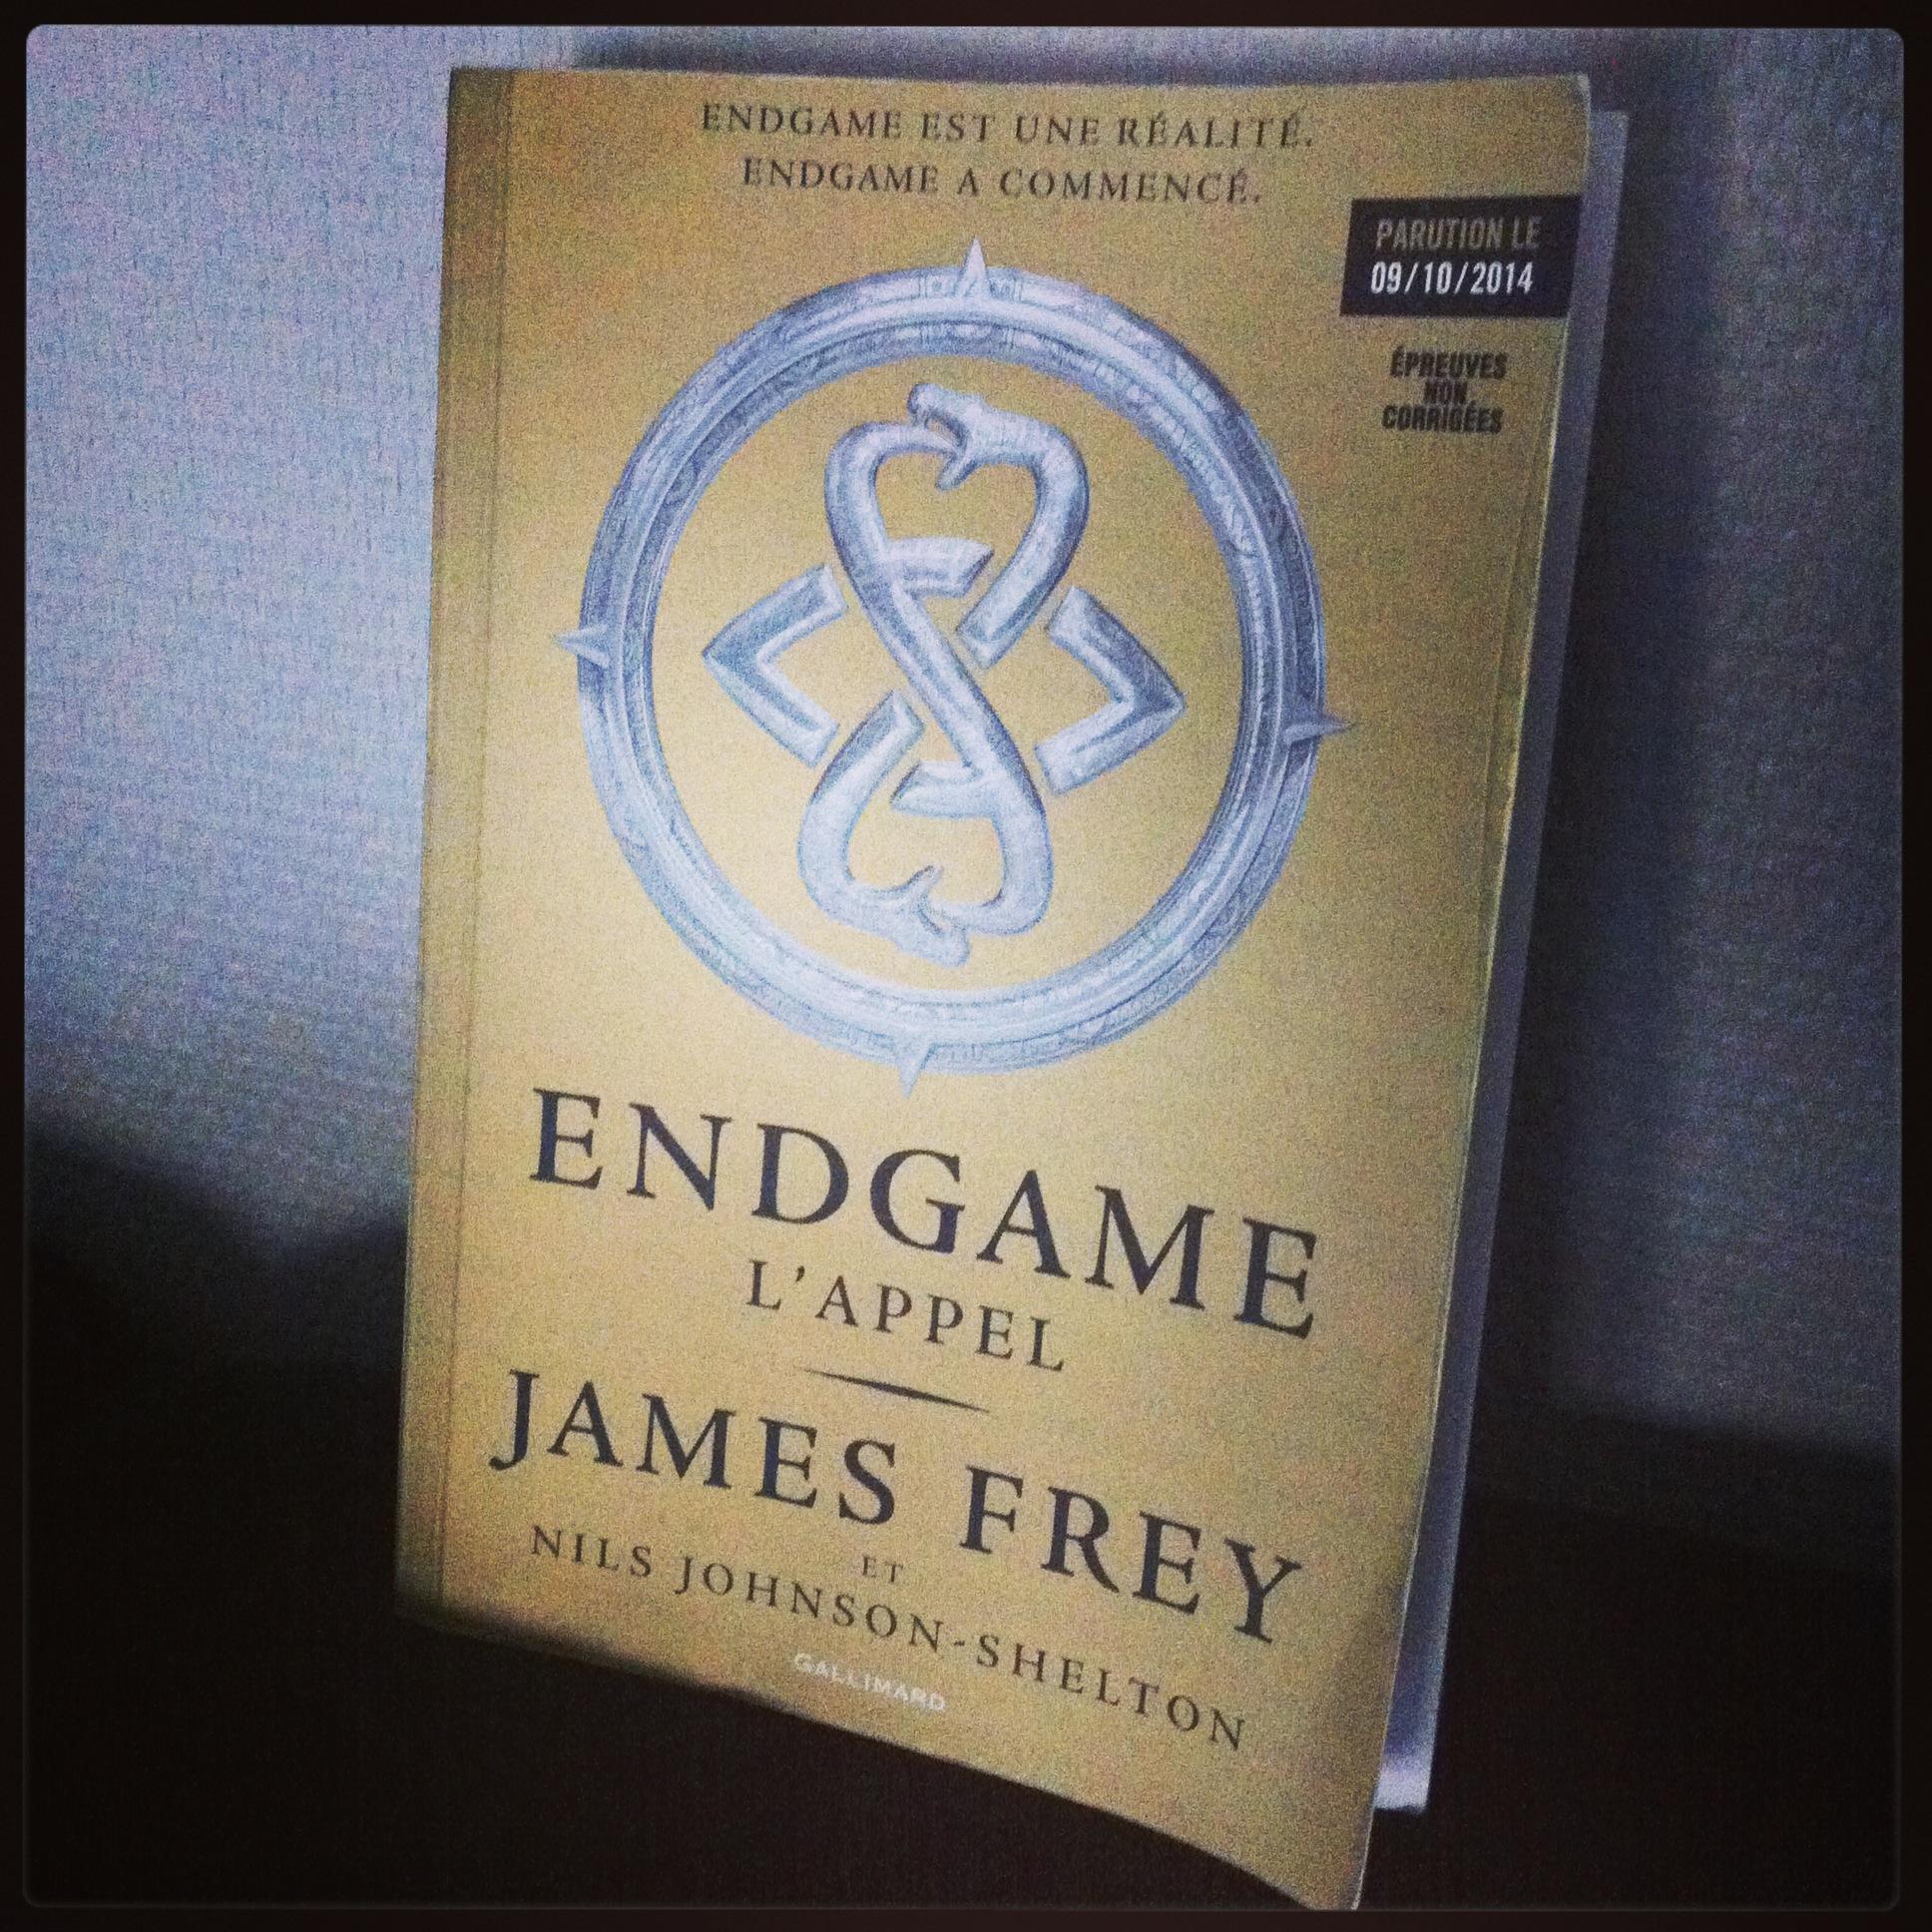 Endgame, lappel par James Frey on lit plus fort lappel james frey gallimard jeunesse fin du monde endgame dystopie adolescents 